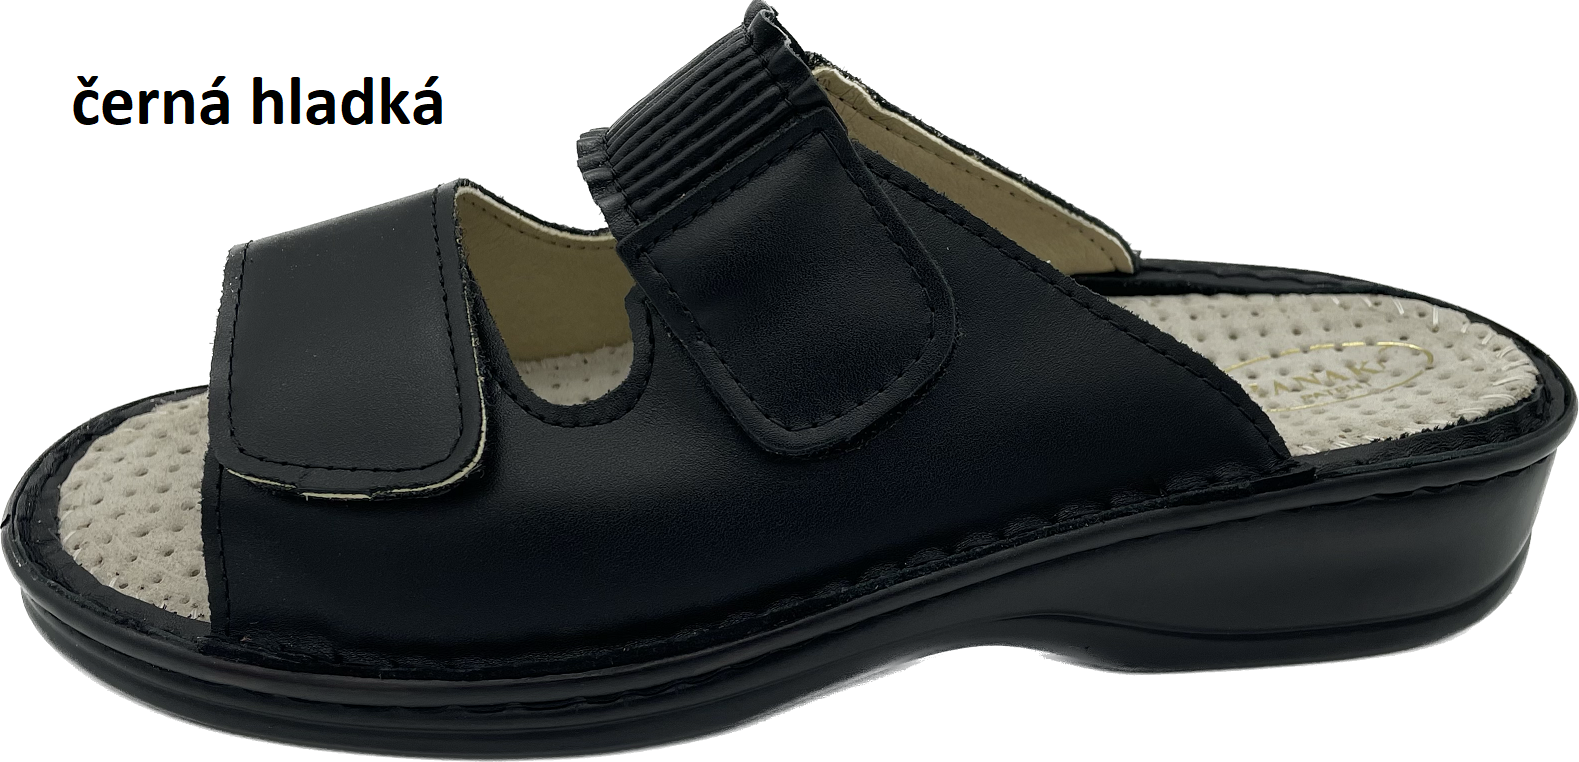 Boty Hanák vzor 304 - černá podešev Barva usně: černá hladká, Velikosti obuvi: 37